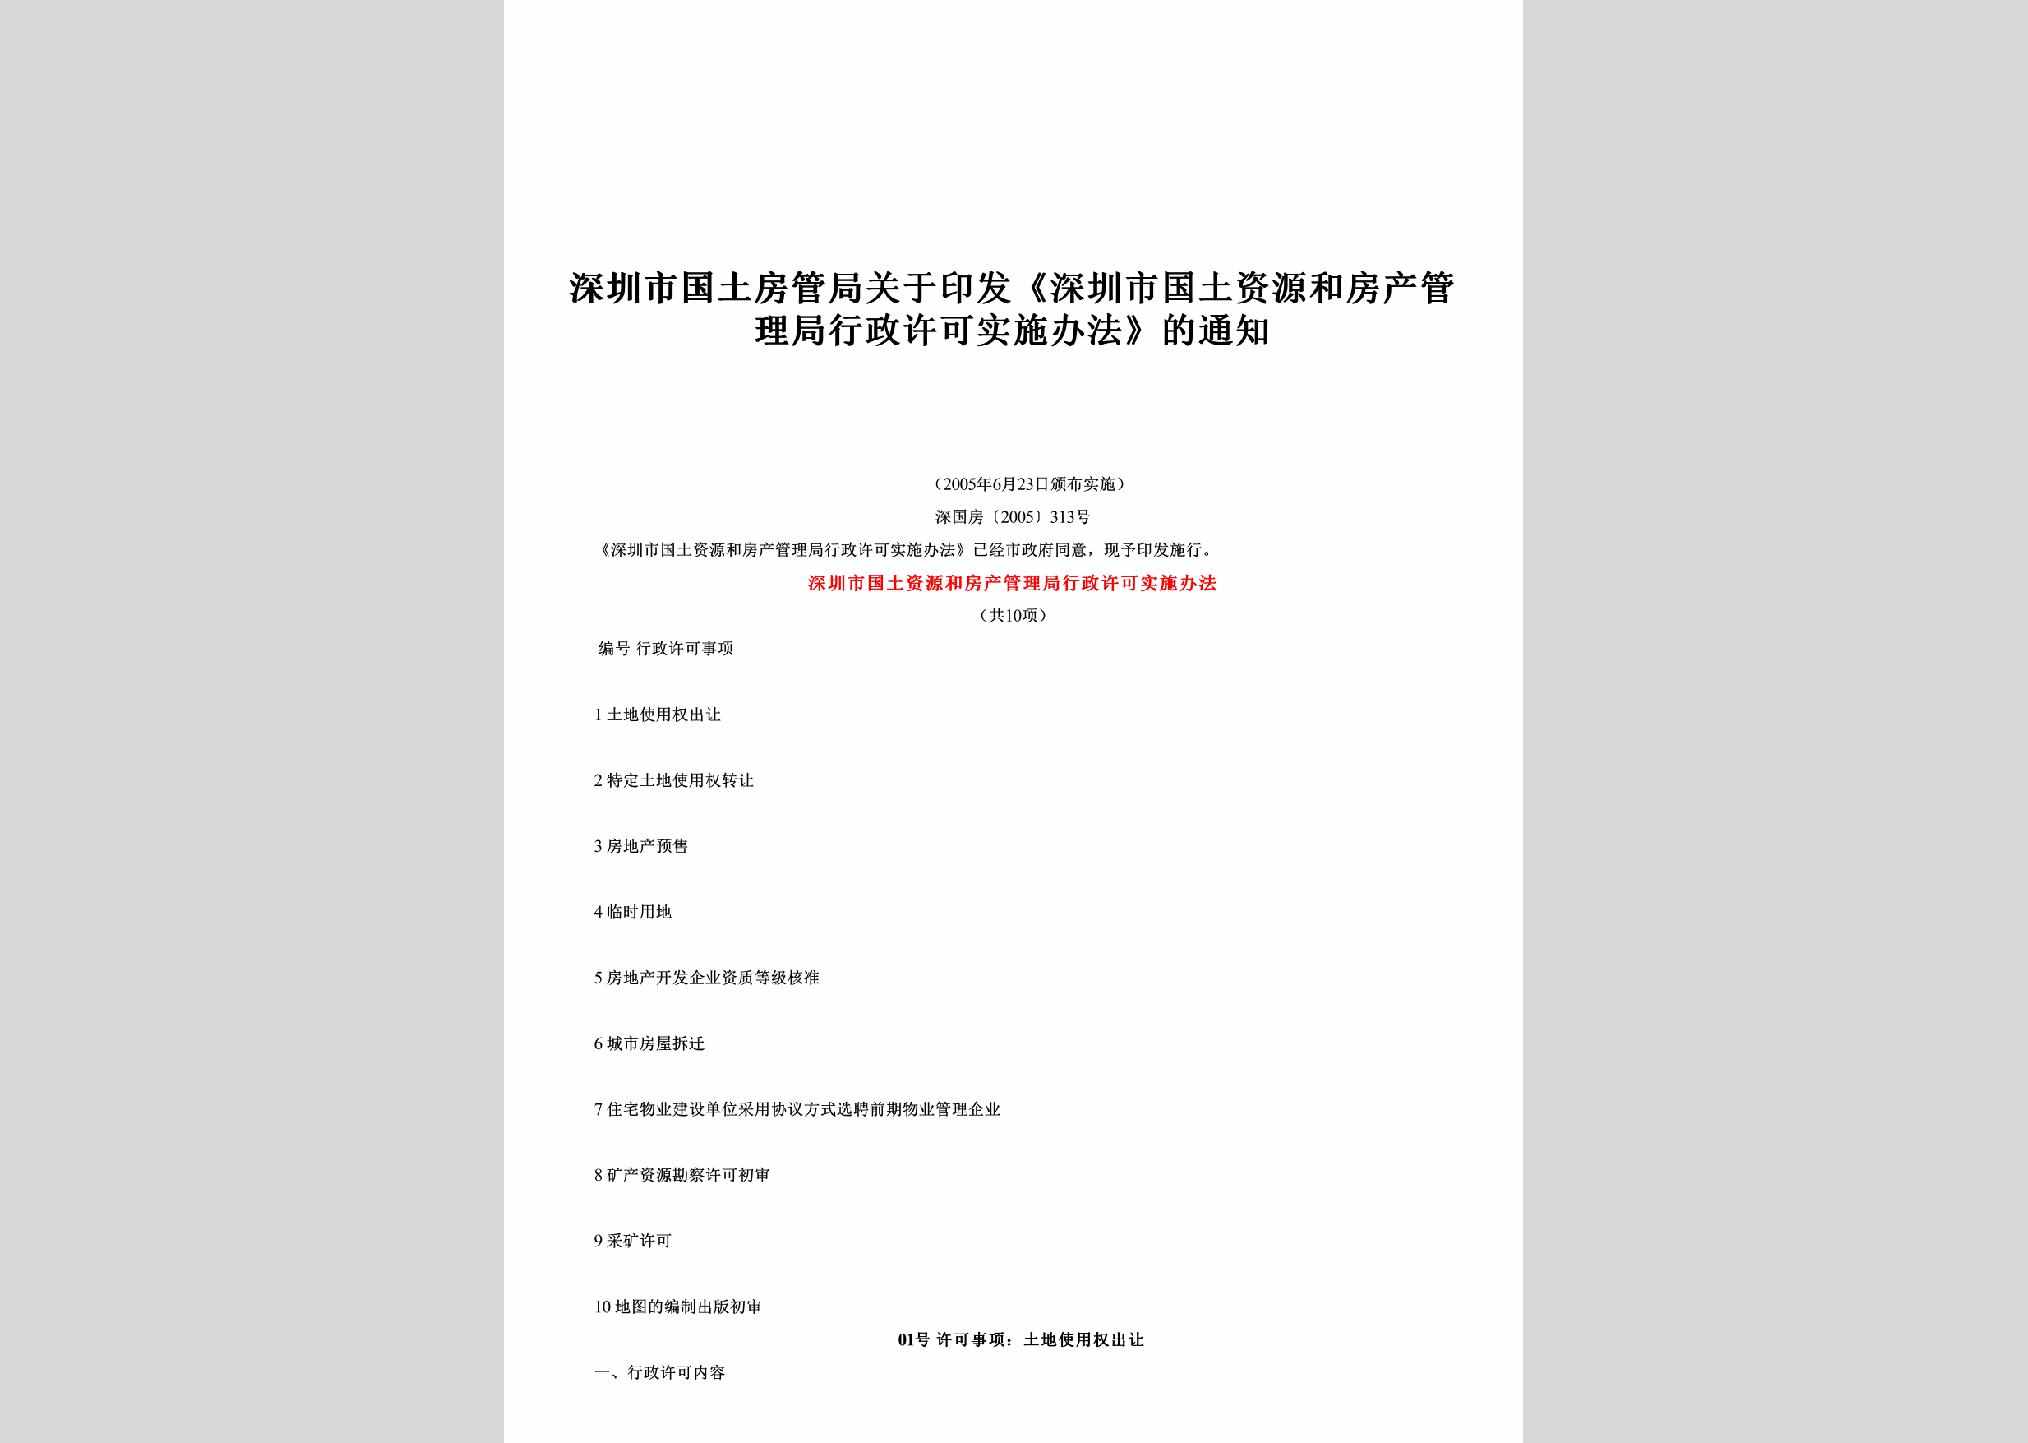 深国房[2005]313号：关于印发《深圳市国土资源和房产管理局行政许可实施办法》的通知